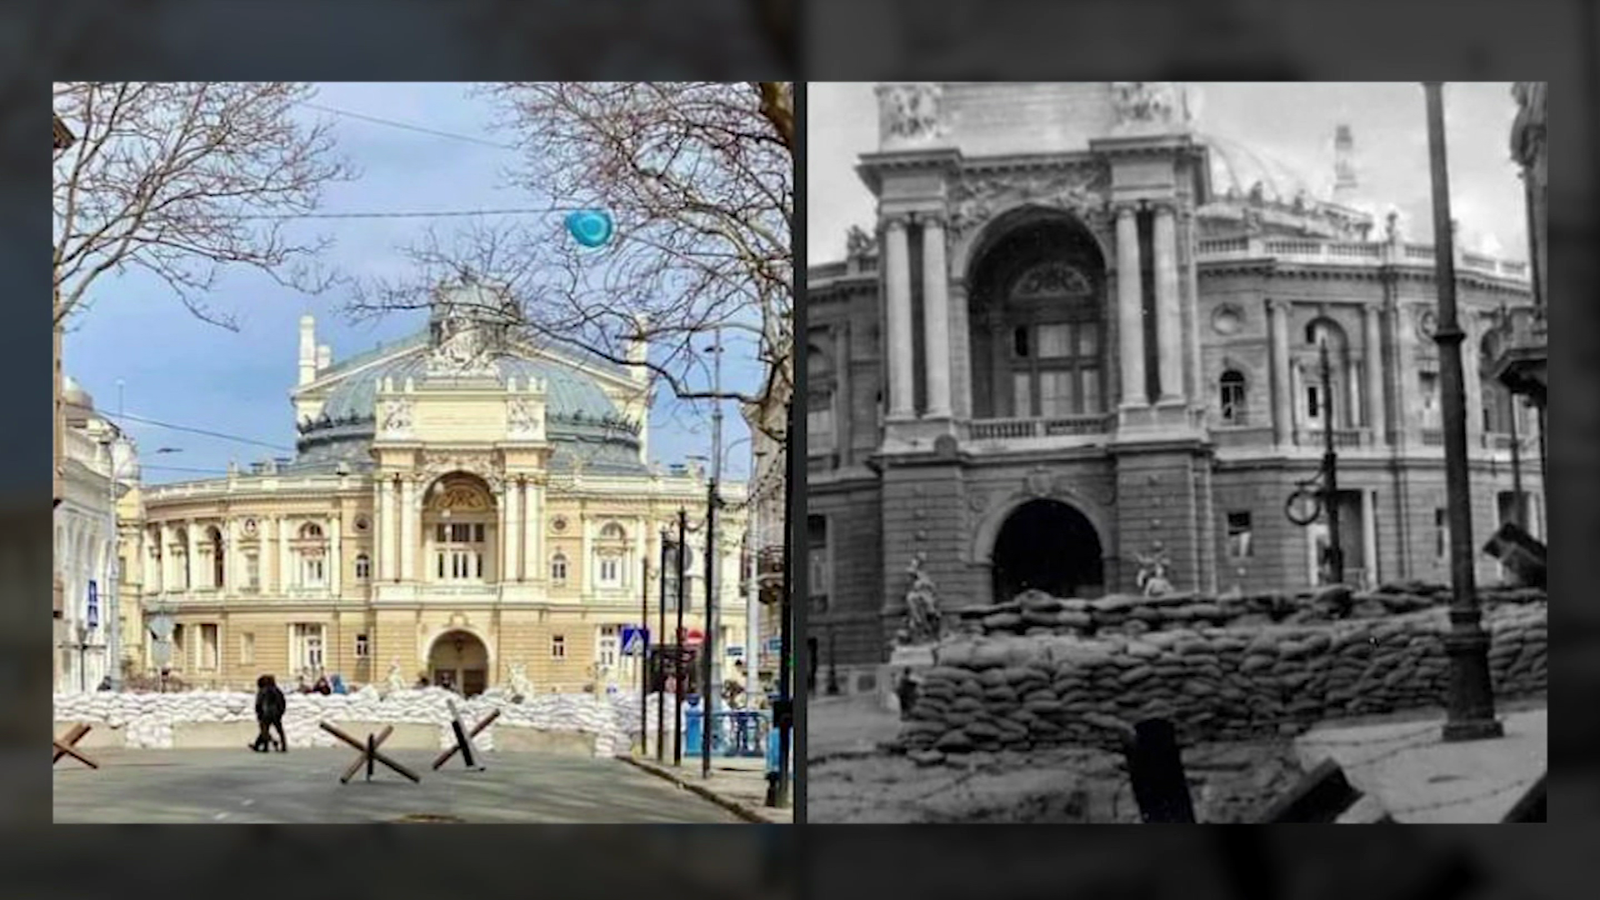 La historia en círculos. El teatro de la ópera de Odesa durante la invasión nazi de 1941 y ahora, esperando la invasión rusa.